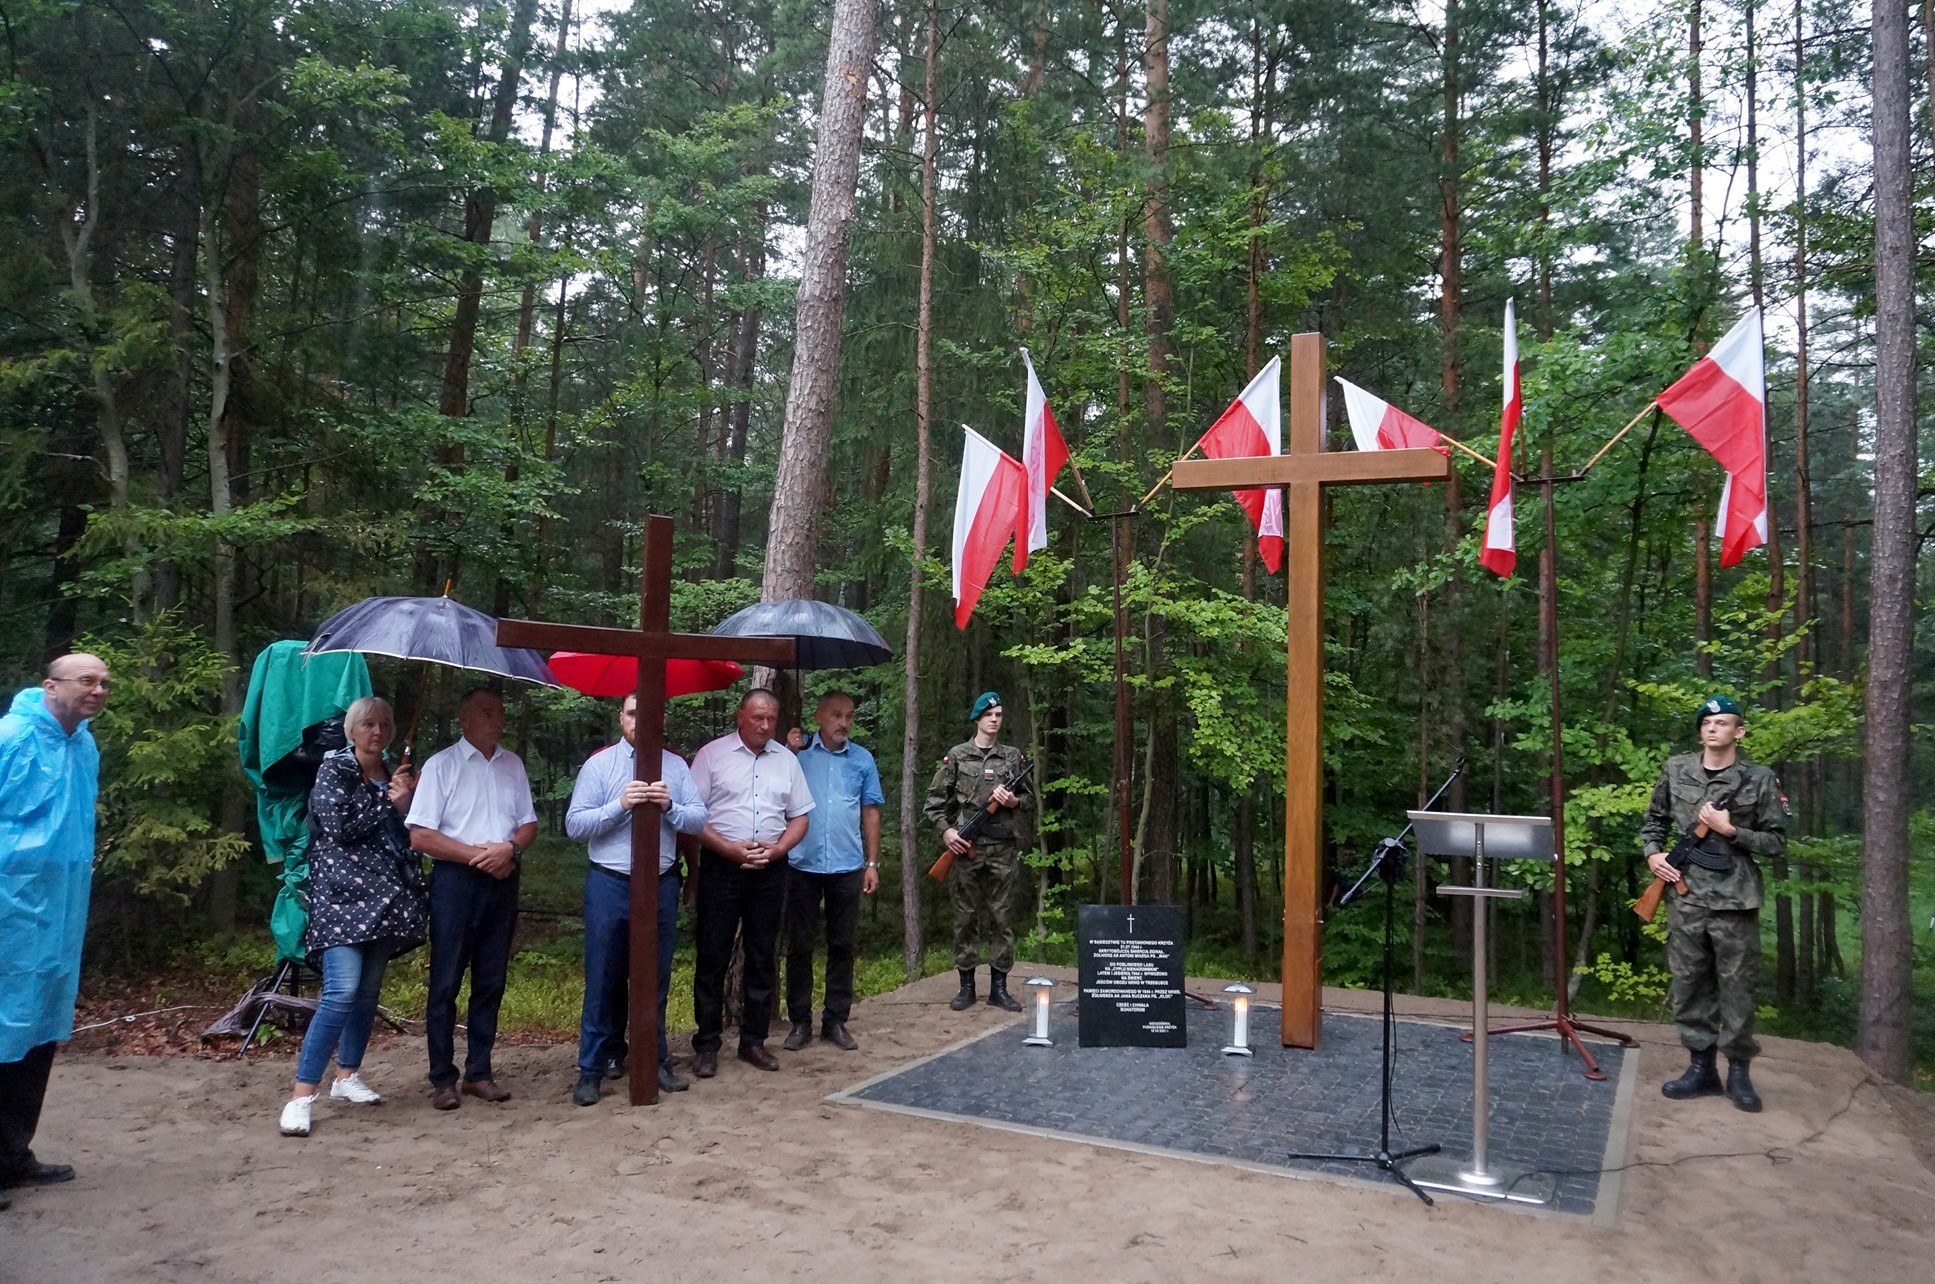 Nienadówka pamięta – poświęcenie miejsca pomordowanych przez NKWD